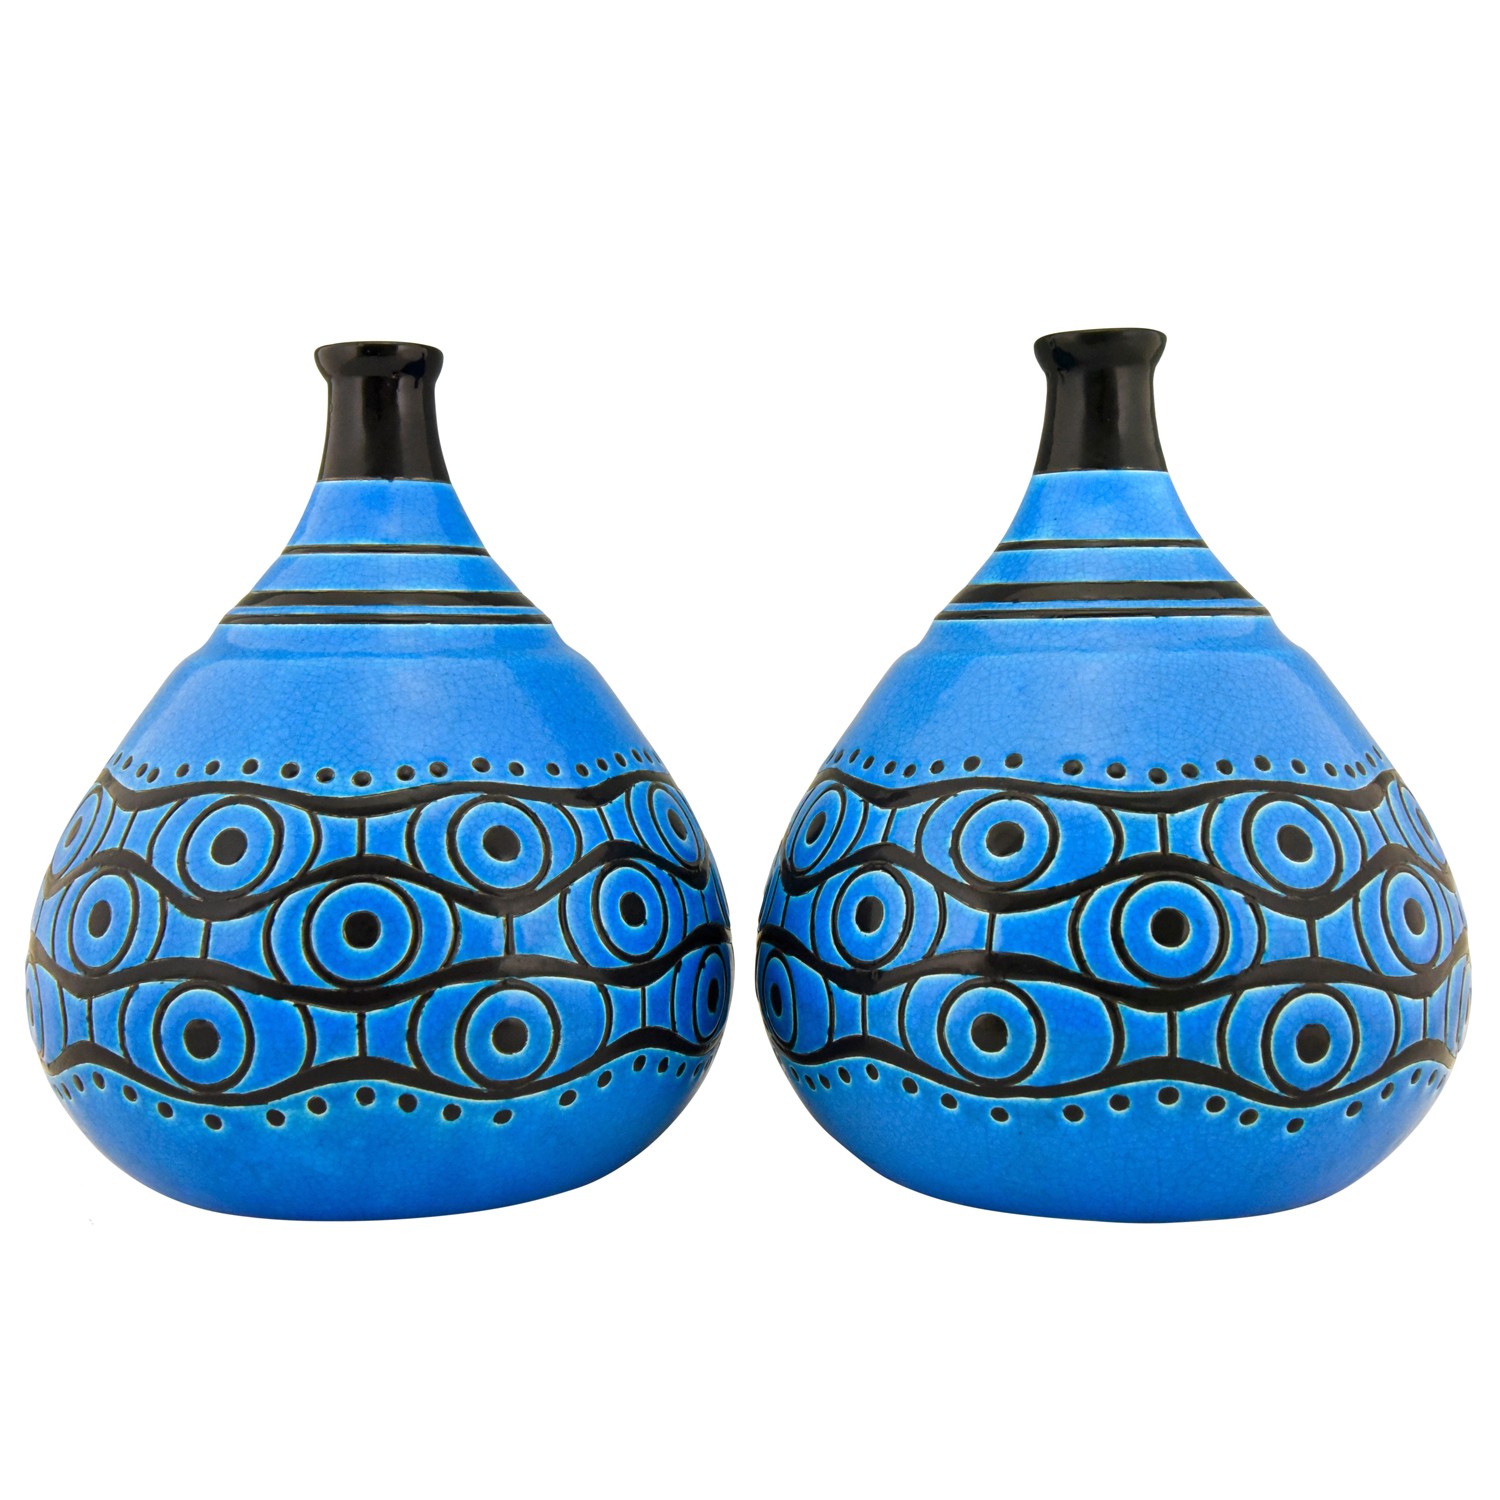 Coloquinte pair Art Deco vases blue and black